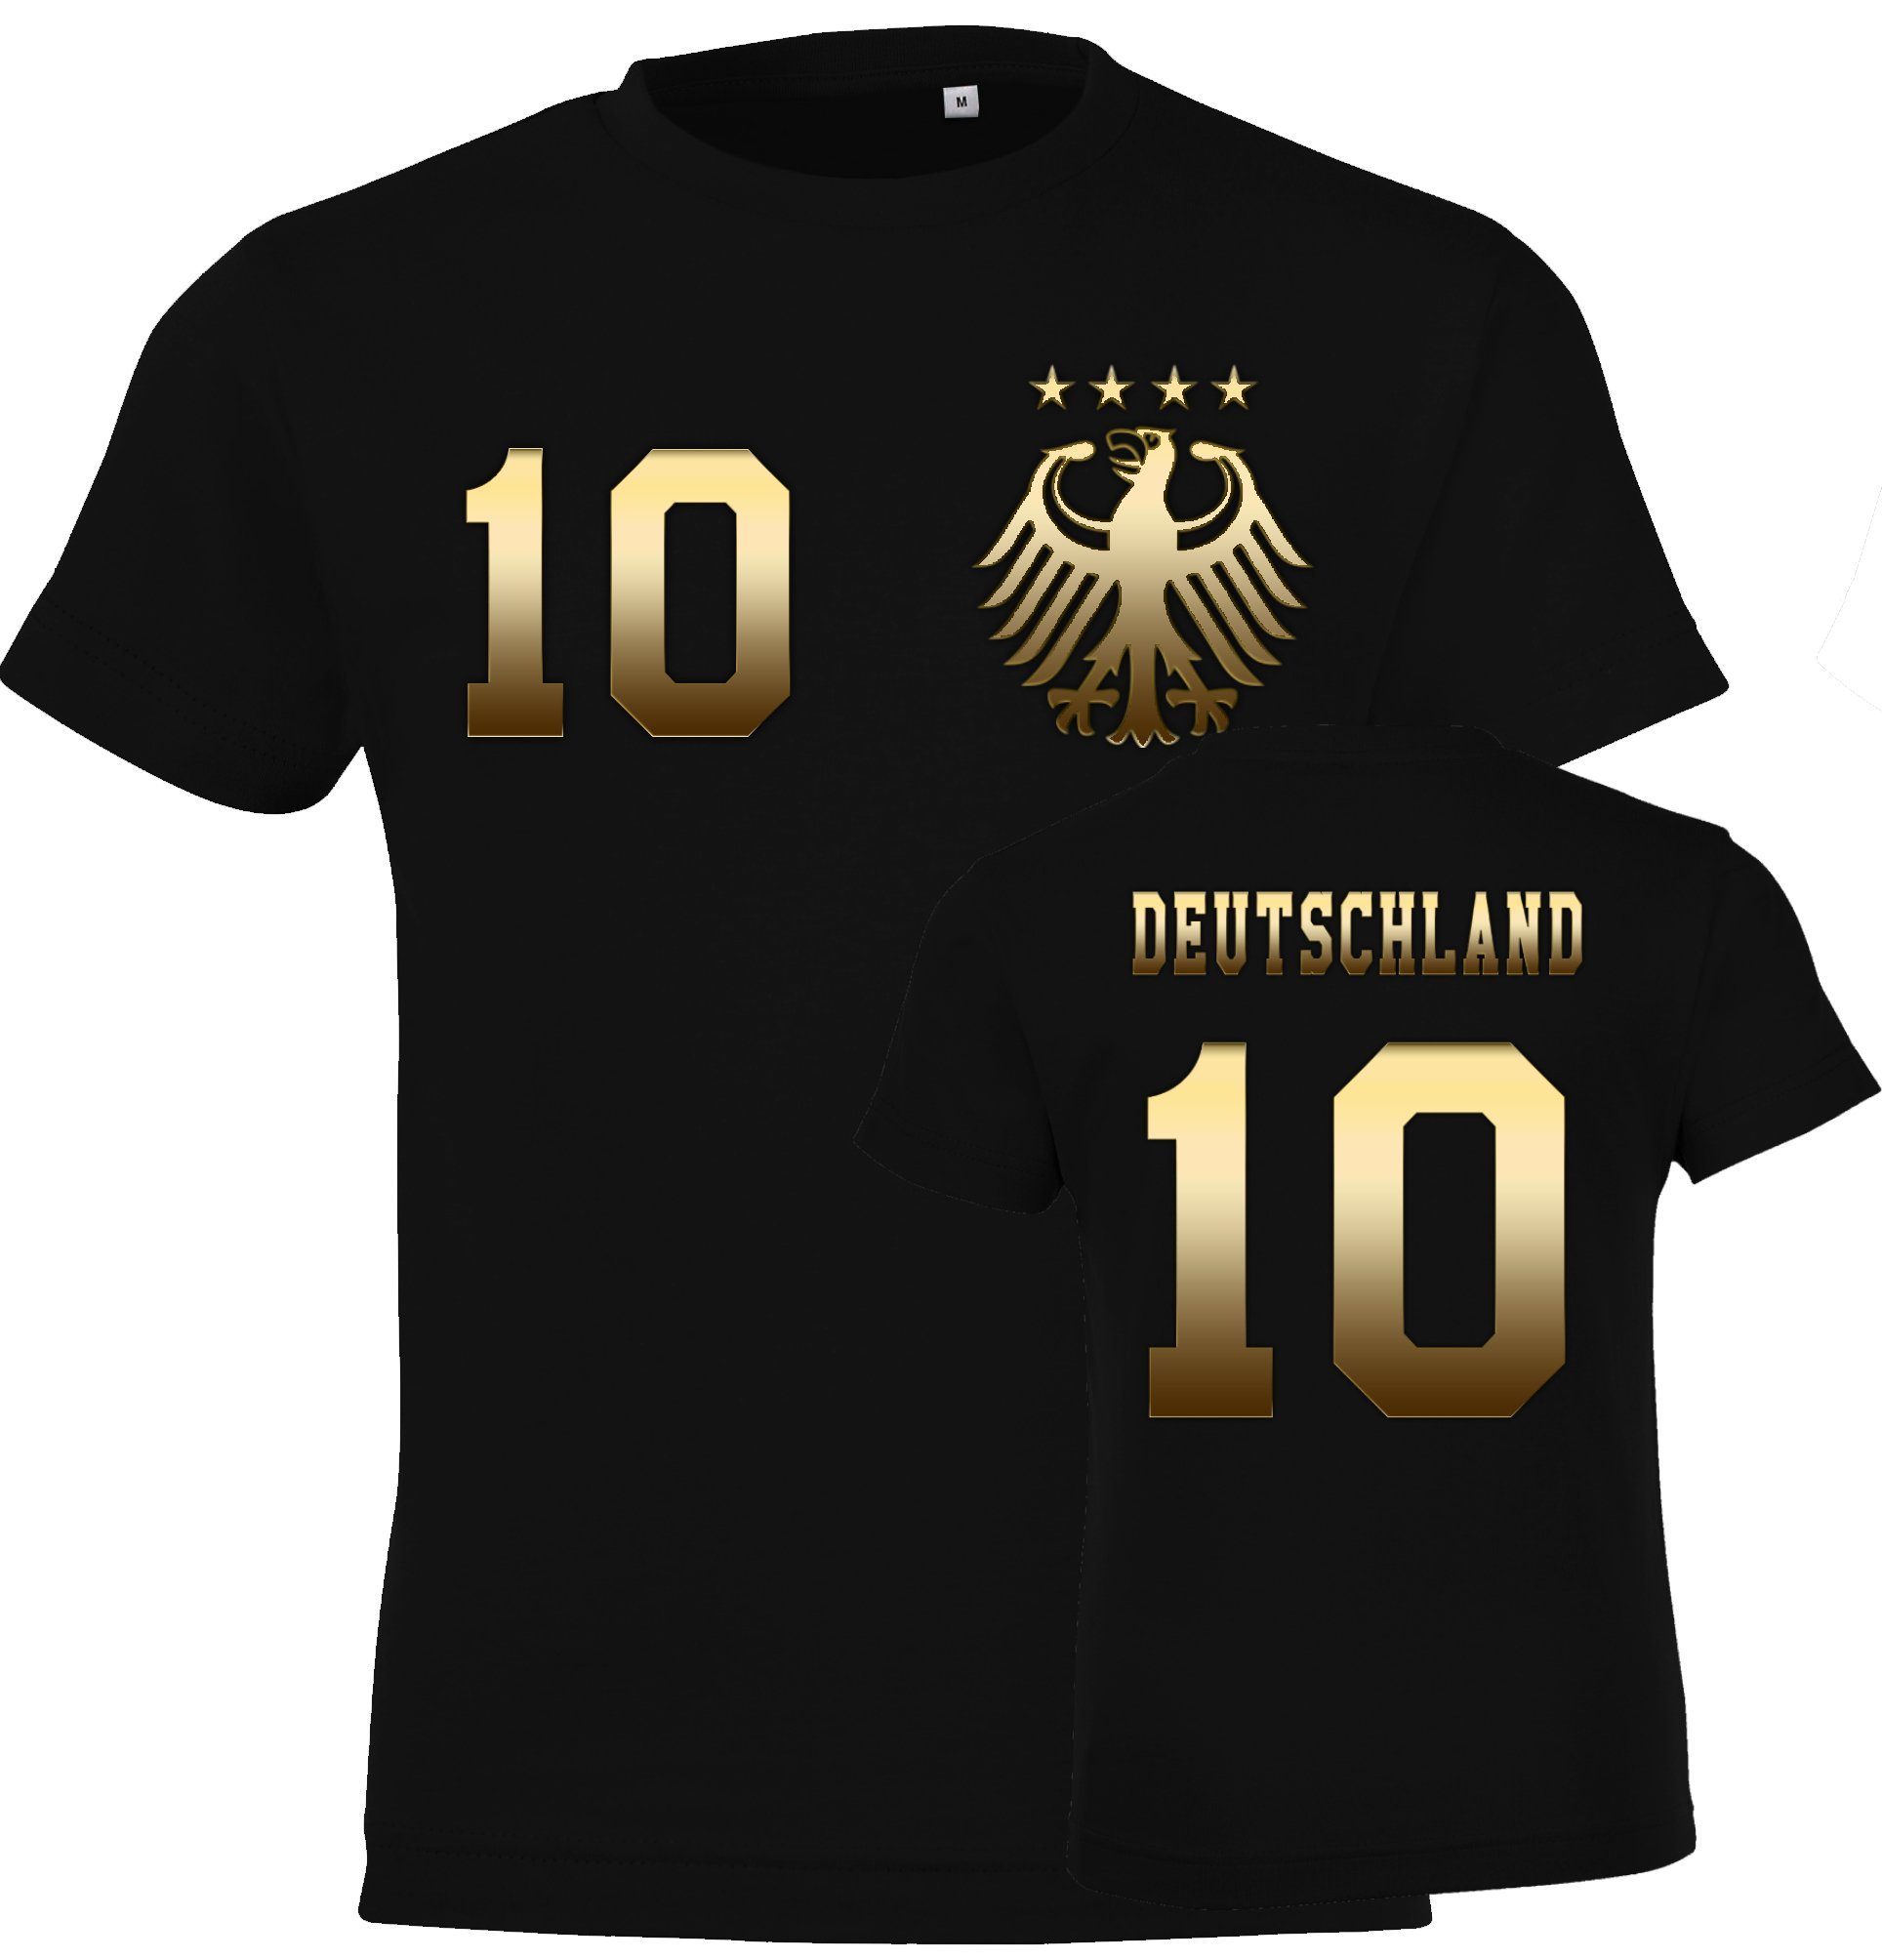 T-Shirt Youth Look Motiv T-Shirt trendigem Deutschland mit Kinder Fußball Designz Trikot im Gold-Schwarz